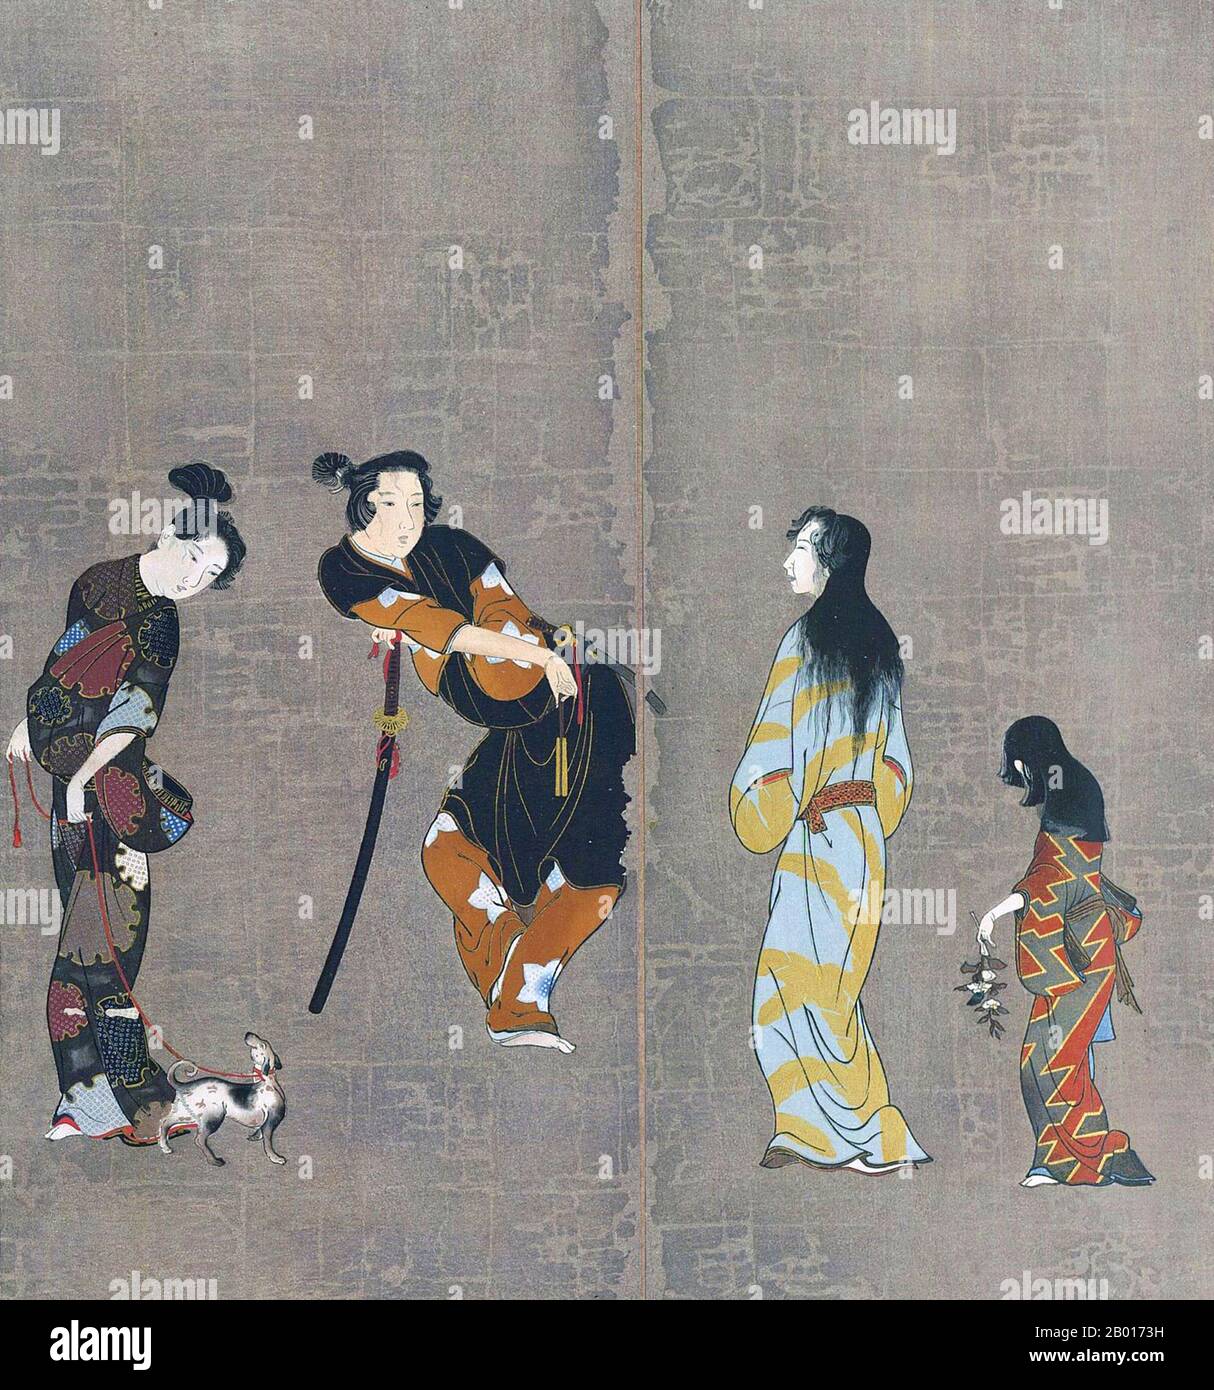 Japan: Ausschnitt aus dem Hikone-Bildschirm, ein Byobu-Faltbild, c. 1624-1644. Der Hikone-Bildschirm war ein Byobo-Faltbildschirm aus der Kan'ei-Ära (c. 1624-1644) der Edo-Periode. Auf Blattgold gemalt und in sechs Teile zusammenklappbar, zeigt der Bildschirm die Vergnügungsviertel von Kyoto, wo Menschen Musik und Spiele spielen. Es ist ein Vertreter der frühen modernen japanischen Genre Malerei, und von einigen als die frühesten Ukiyo-e Kunstwerk gesehen. 1955 wurde es zum Nationalen Schatz ernannt. Stockfoto